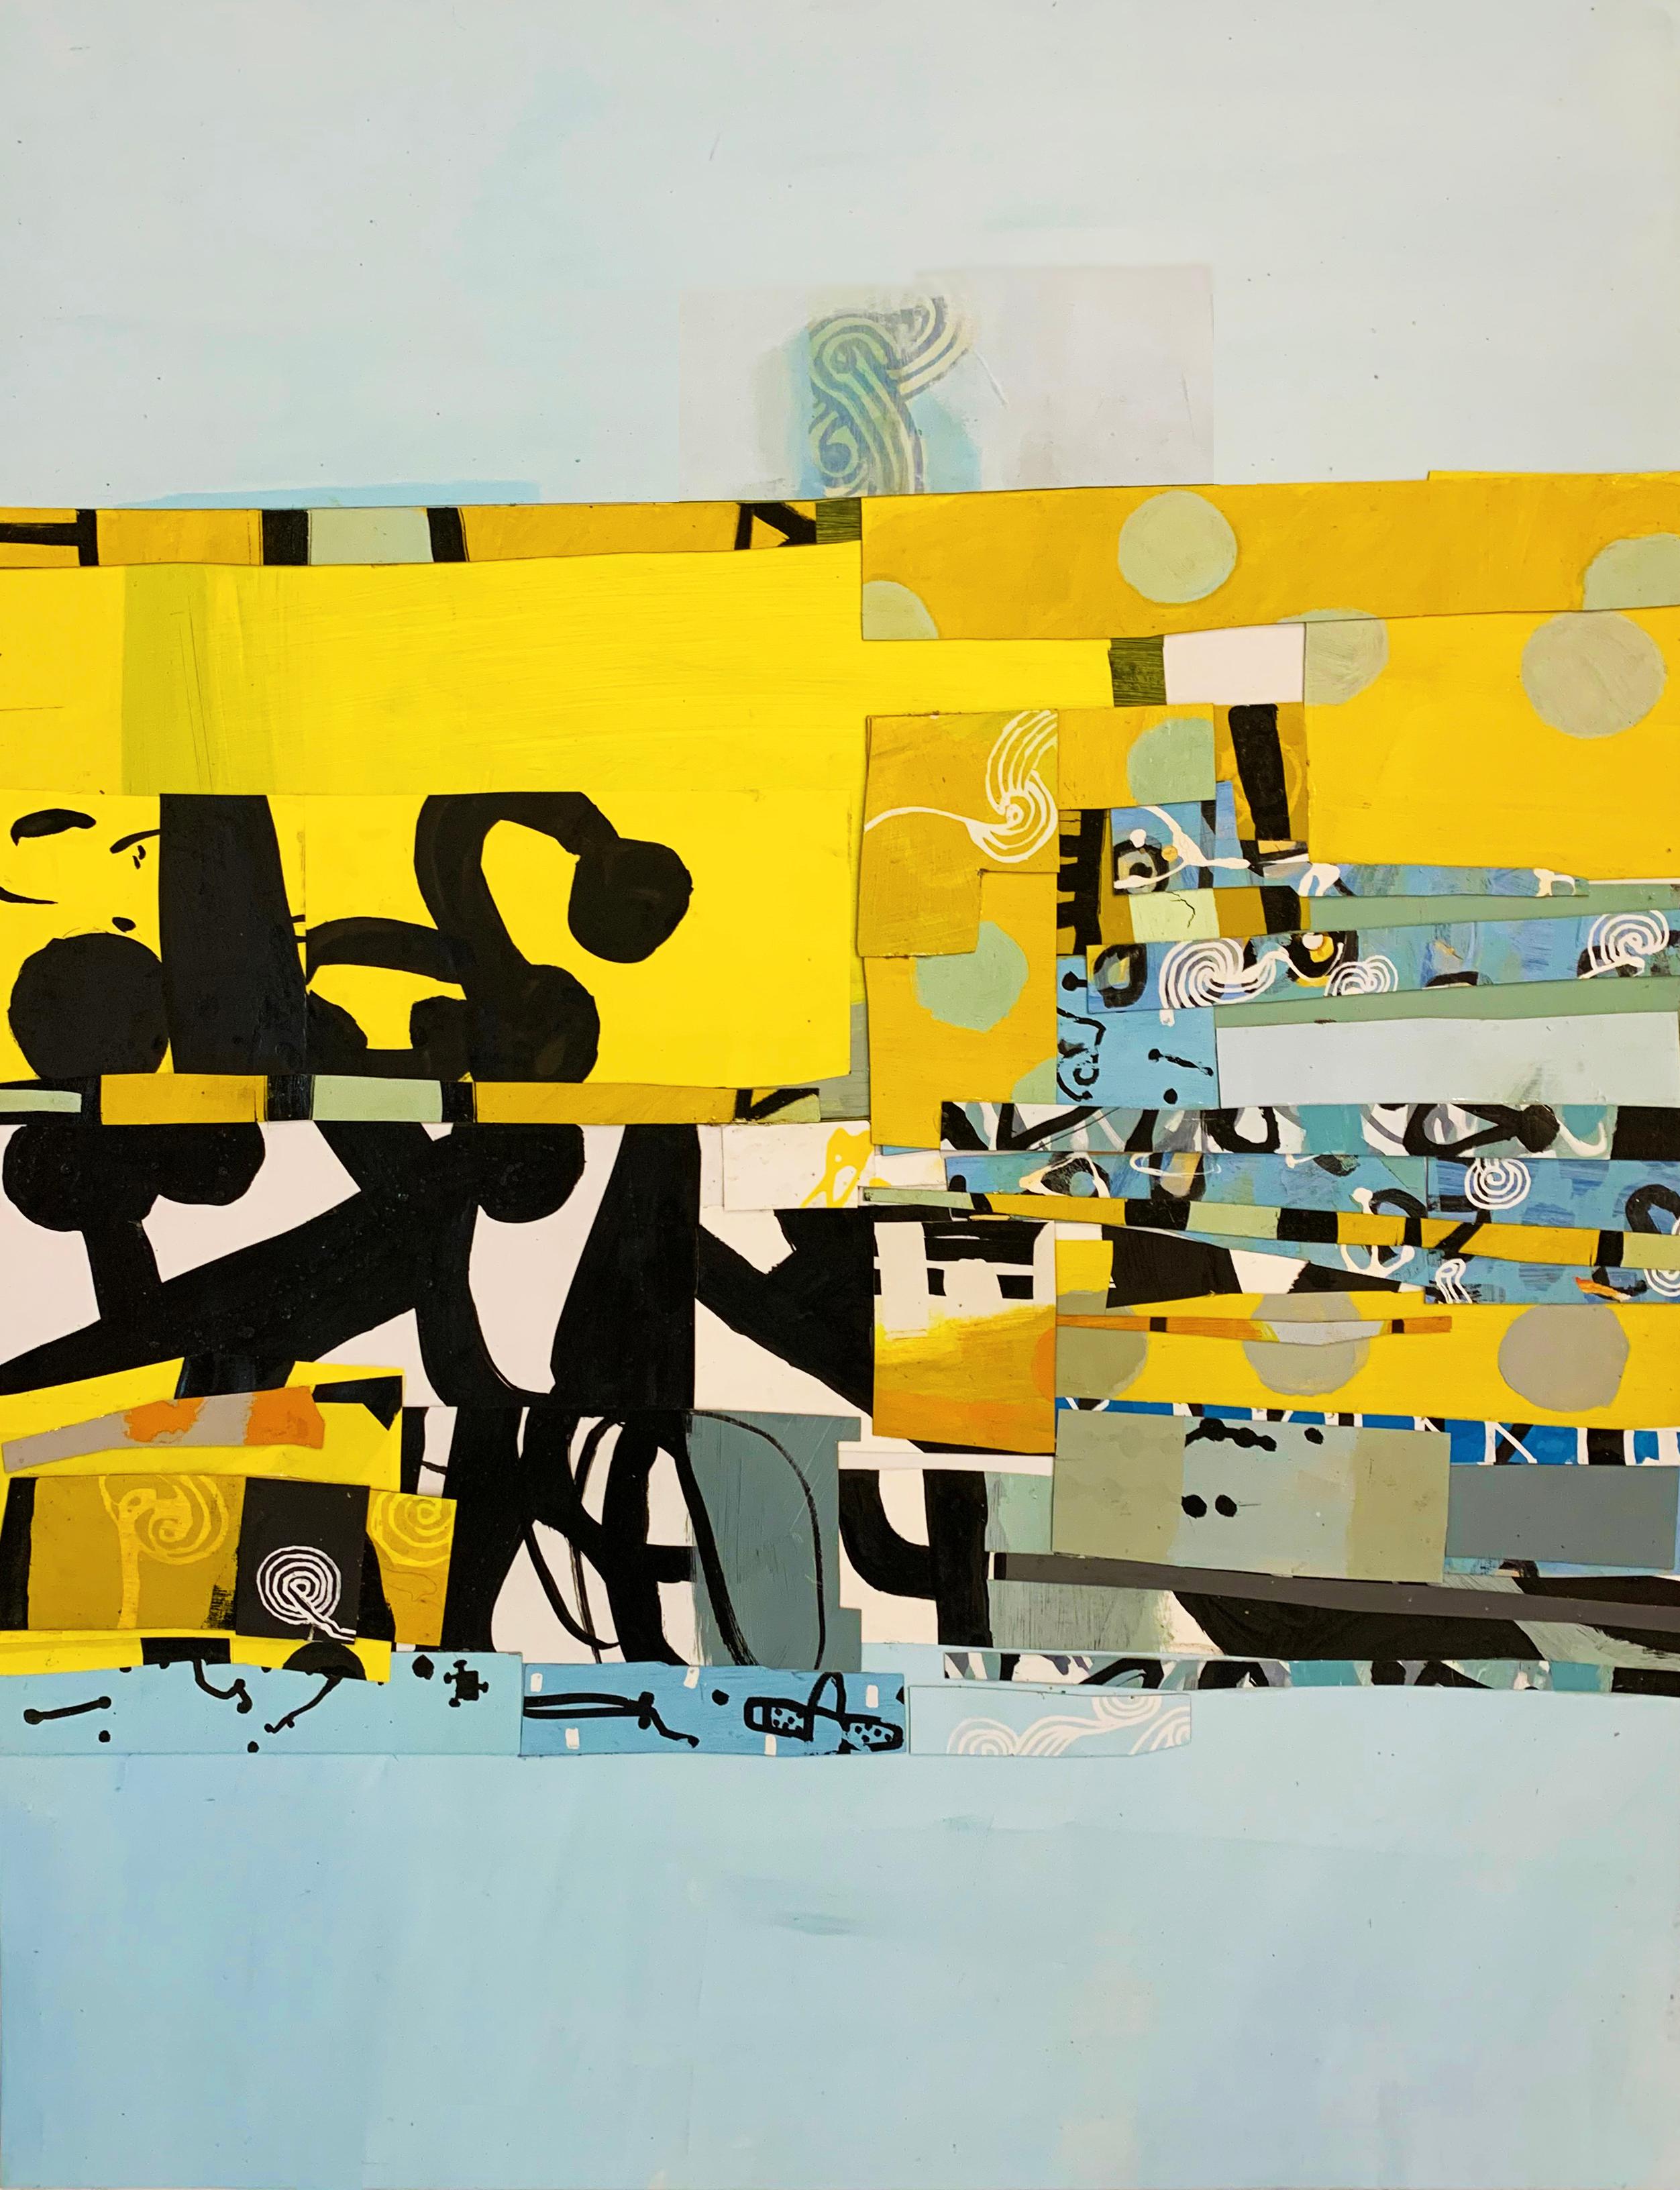 Russell Frampton Abstract Painting – 65 thru 69 – zeitgenössisches, abstraktes, nautisches, farbenfrohes Gemälde in Mischtechnik 